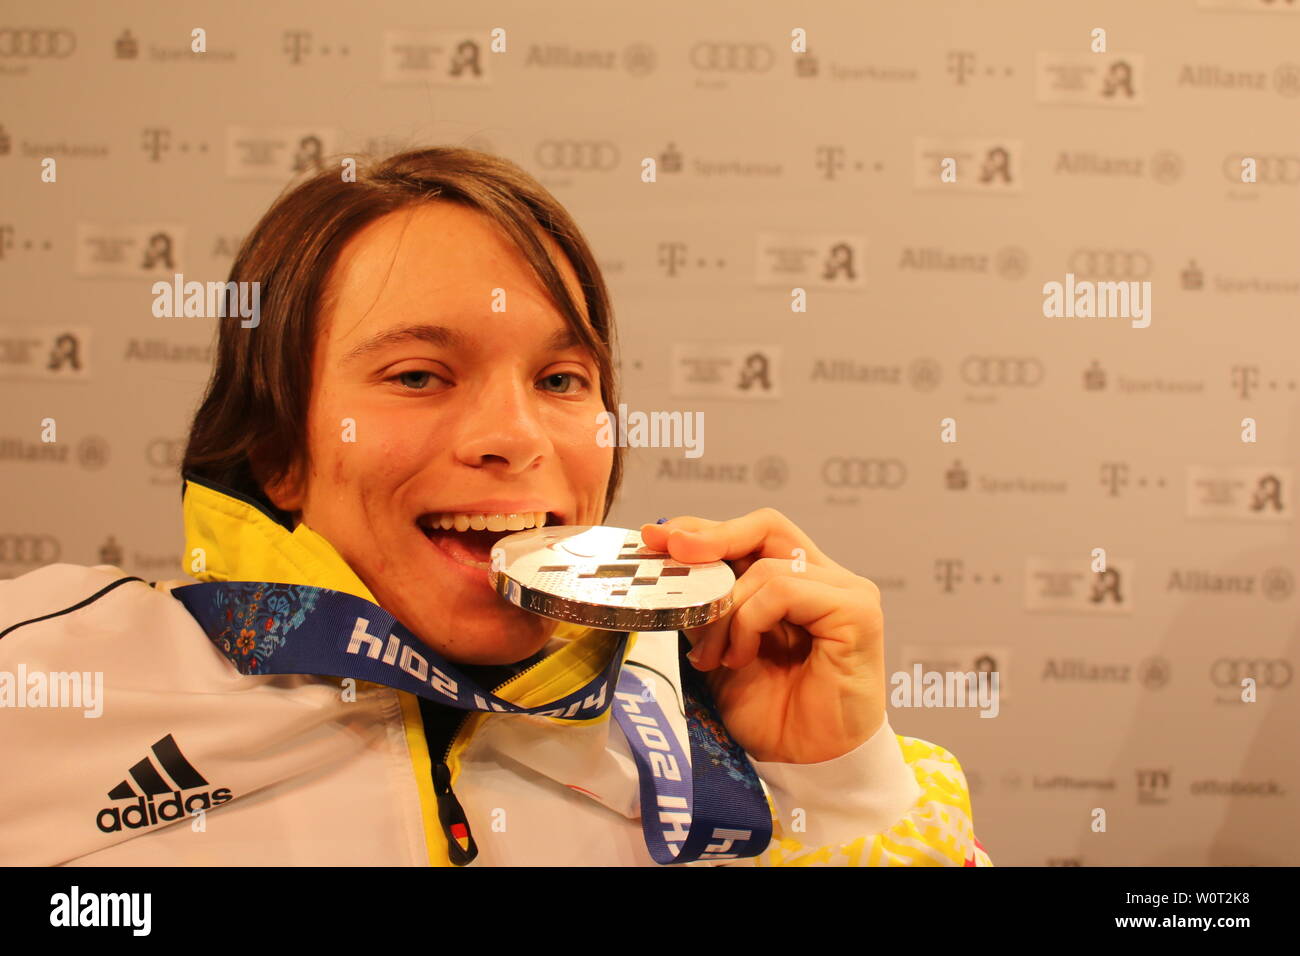 Anja Wicker findet ihre Medaille zum gut Reinbeißen - Paralympiques Sotschi 2014 / 2014 Jeux paralympiques d'hiver de Sotchi Banque D'Images